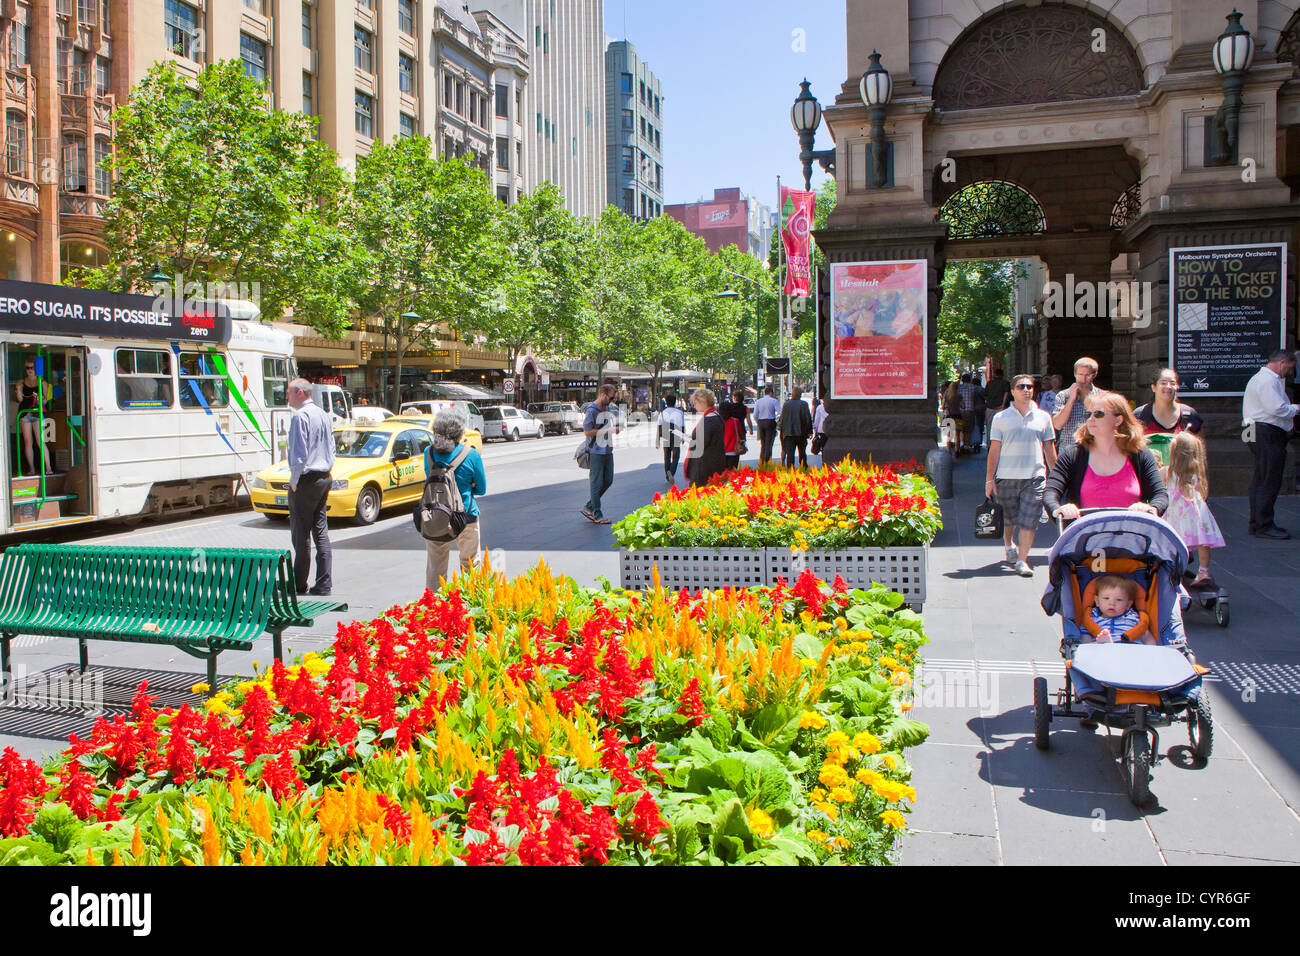 Melbourne central city transport trams sur summers day avec des fleurs dans la rue. Banque D'Images